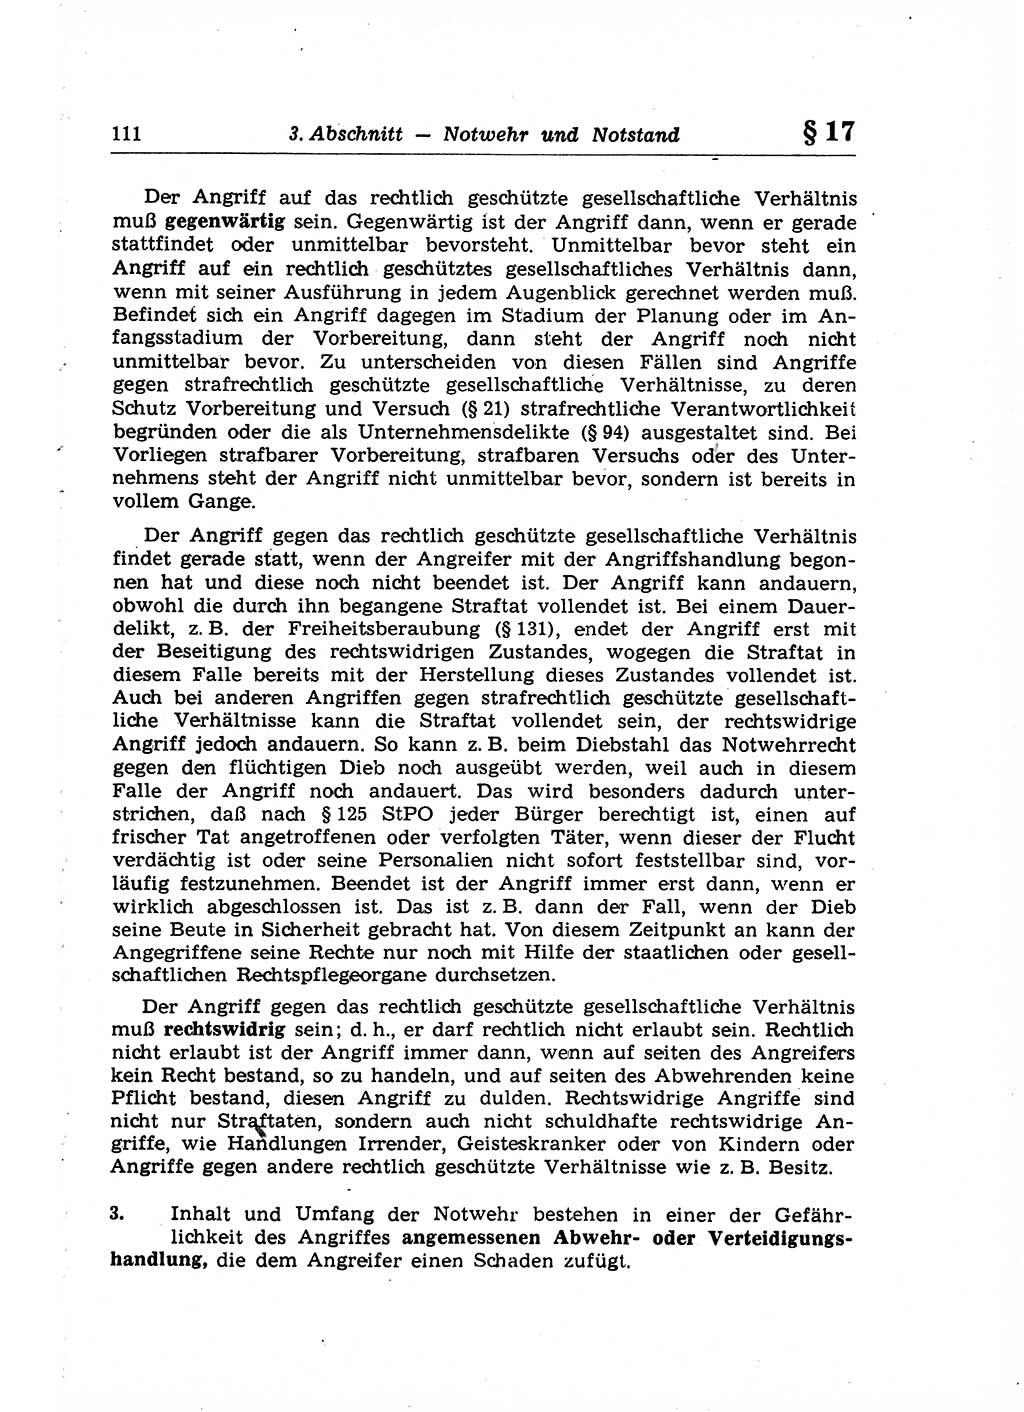 Strafrecht der Deutschen Demokratischen Republik (DDR), Lehrkommentar zum Strafgesetzbuch (StGB), Allgemeiner Teil 1969, Seite 111 (Strafr. DDR Lehrkomm. StGB AT 1969, S. 111)